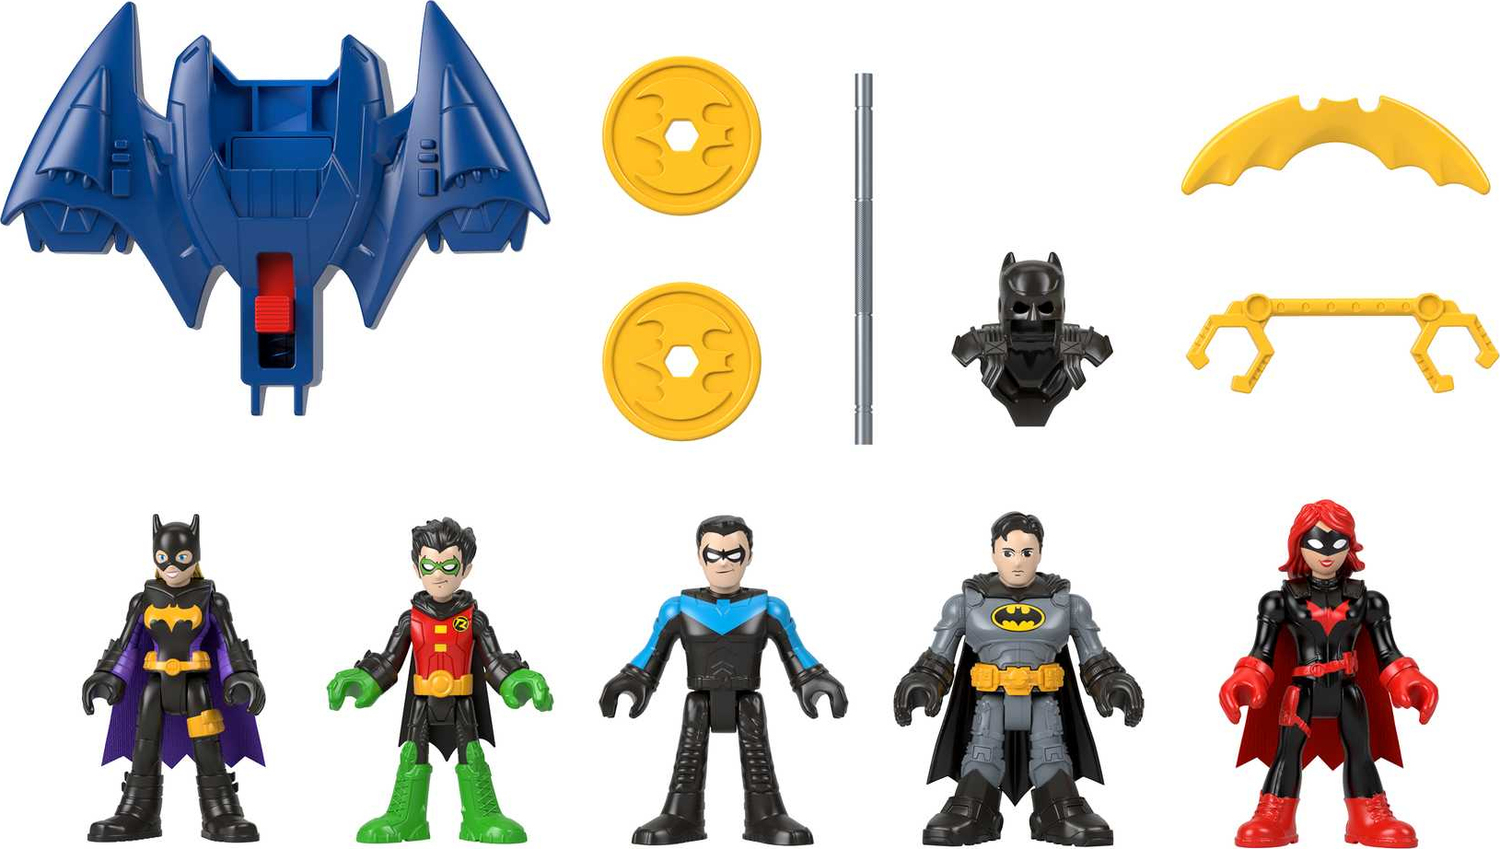  Imaginext DC Super Friends Batman Family Multipack